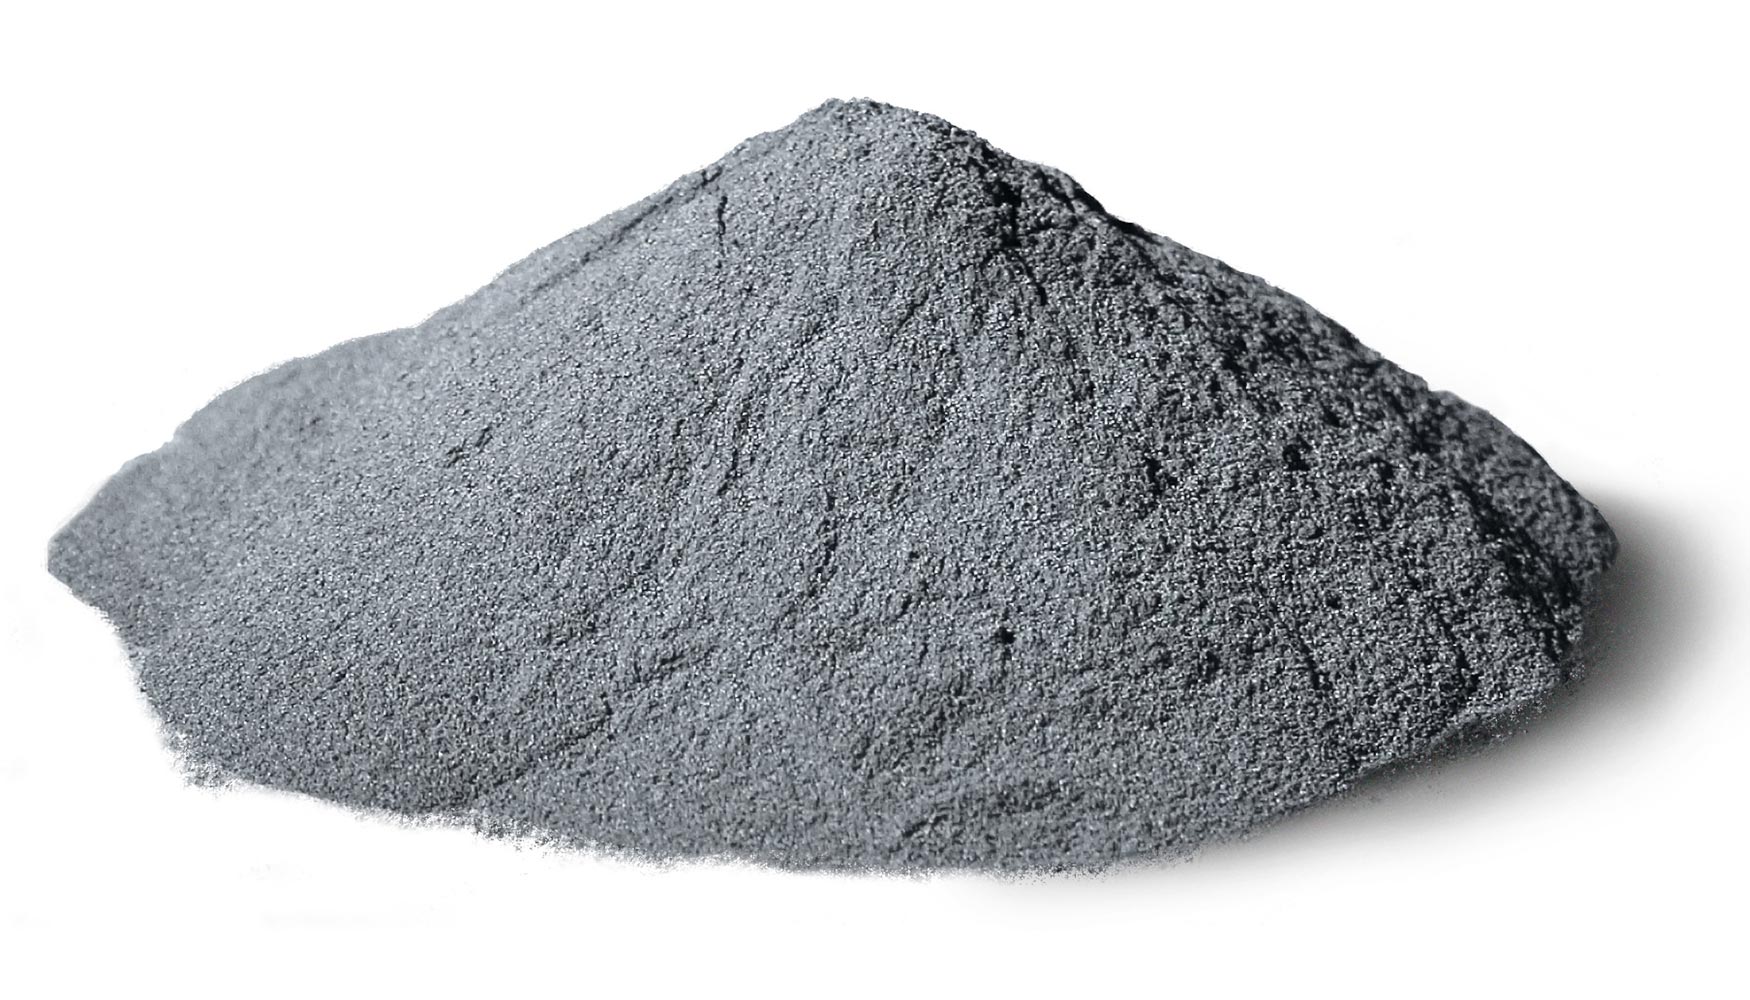 Hoy las opciones de polvo de metal atomizado incluyen aceros de baja aleacin, aceros para herramientas, aceros inoxidables y dplex...